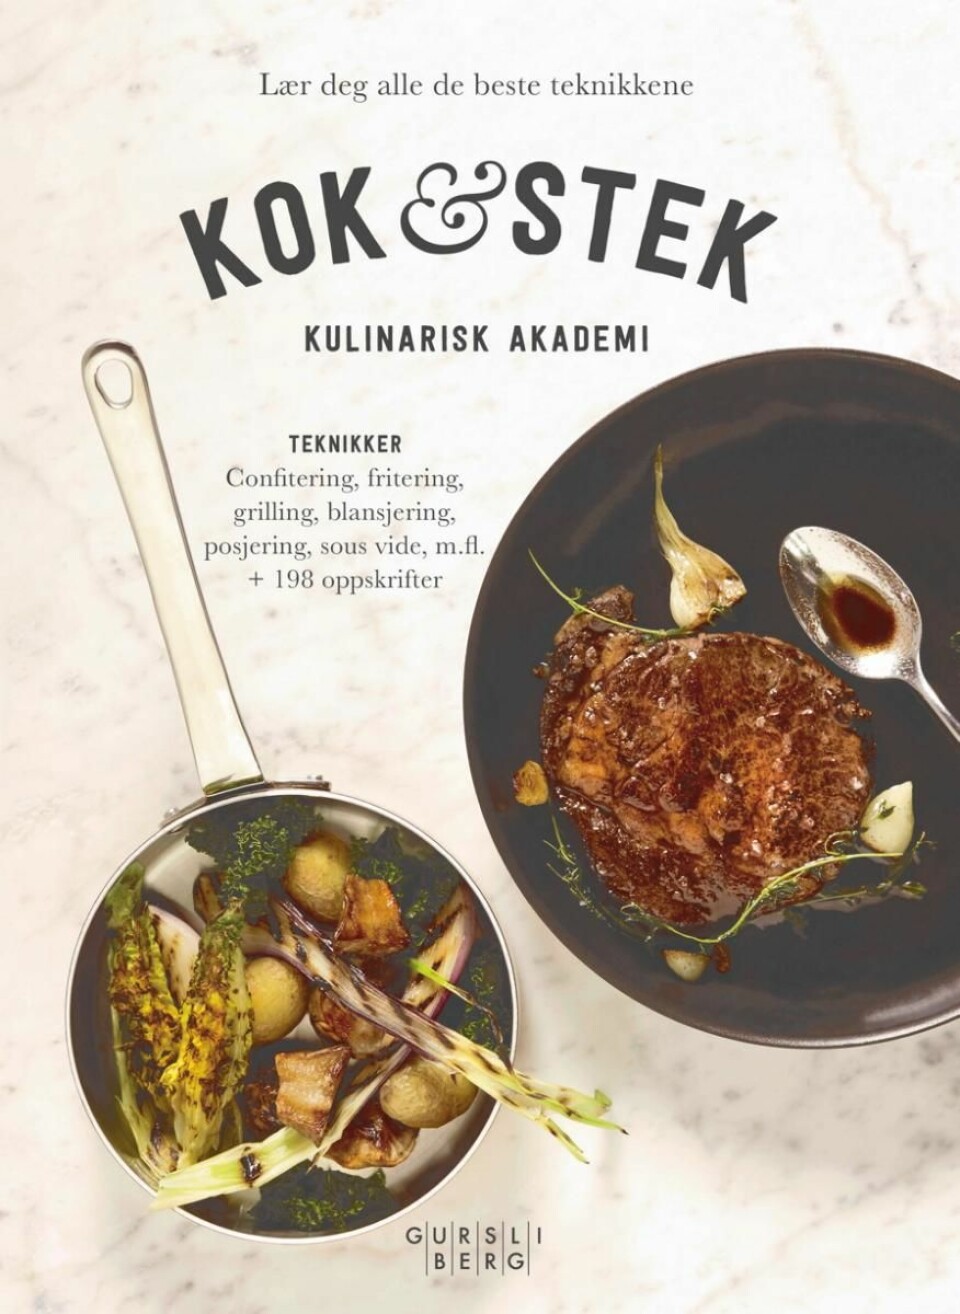 Kulinarisk Akademi har gitt ut tre bøker, deriblant prisbelønte «Kok & stek». (Foto: Paul Paiewonsky)